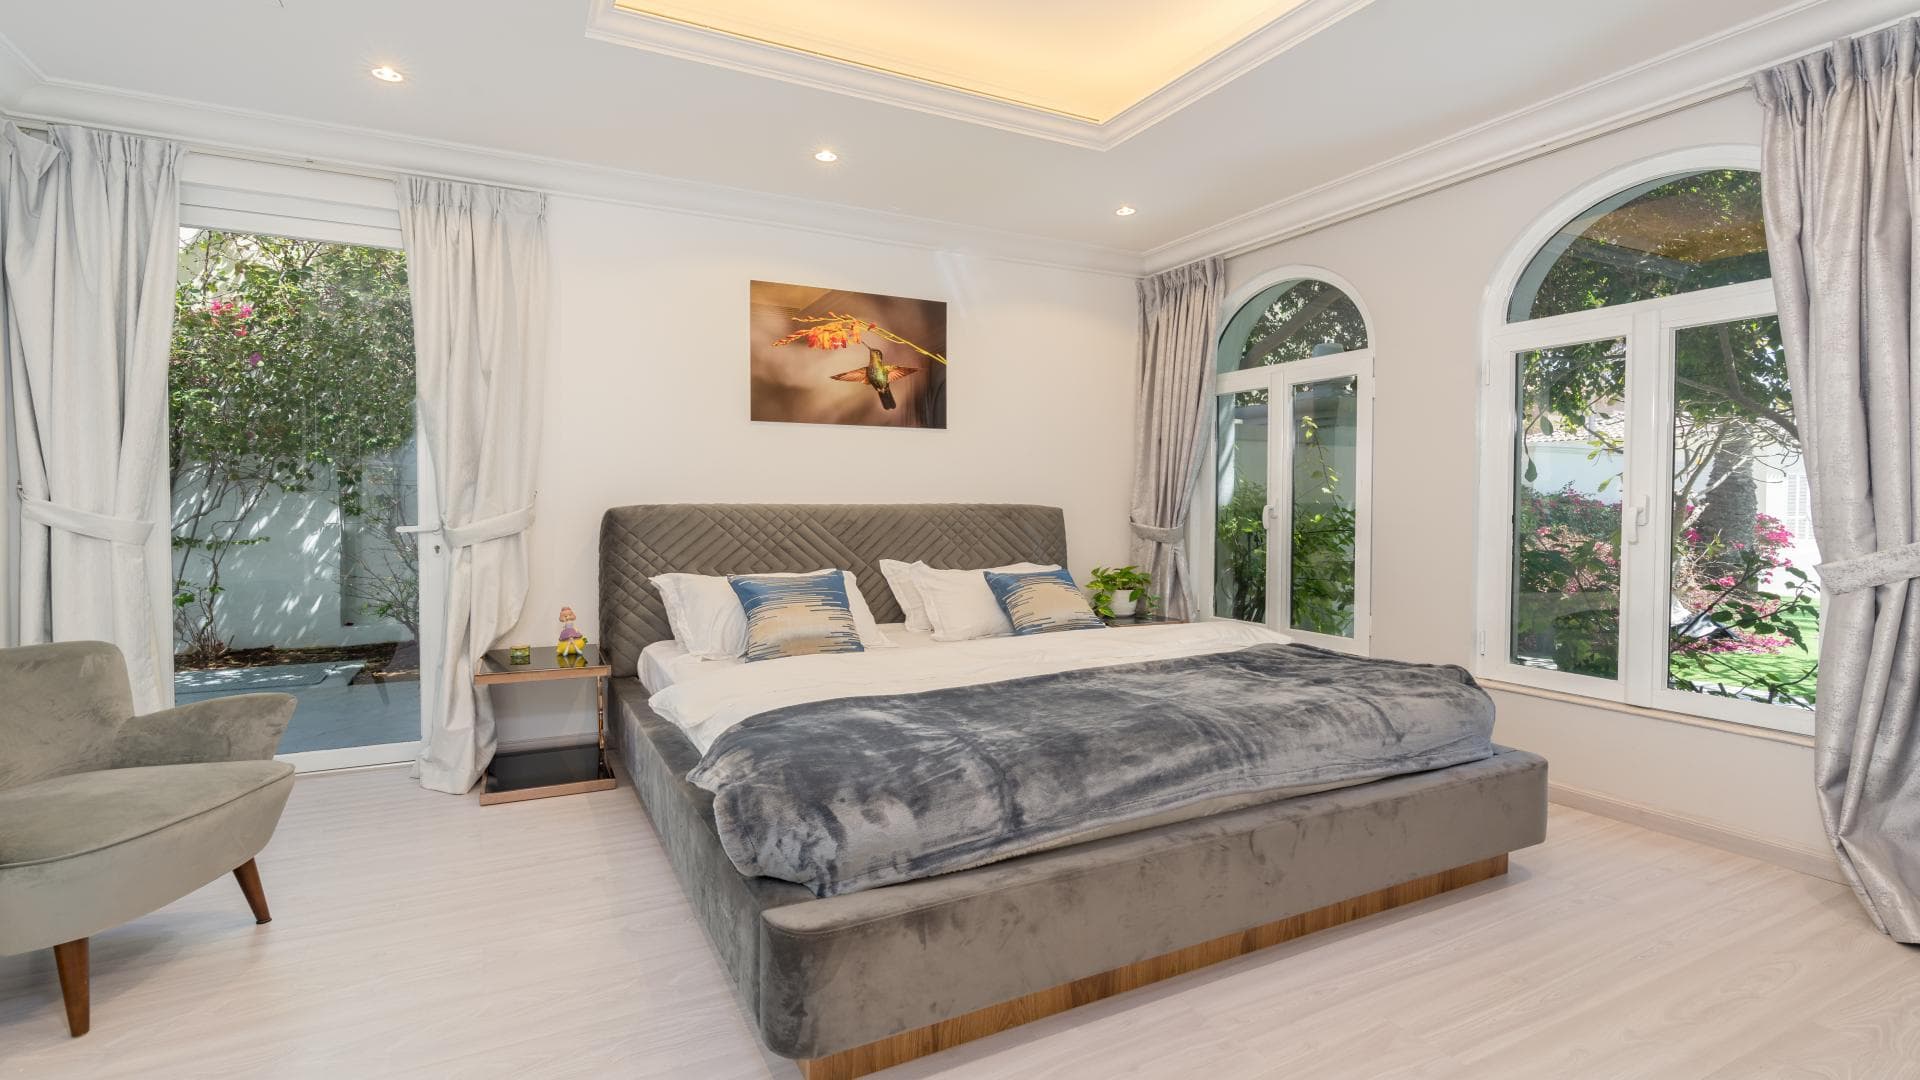 4 Bedroom Villa For Rent Mughal Lp36827 Efd6065a34b5980.jpg